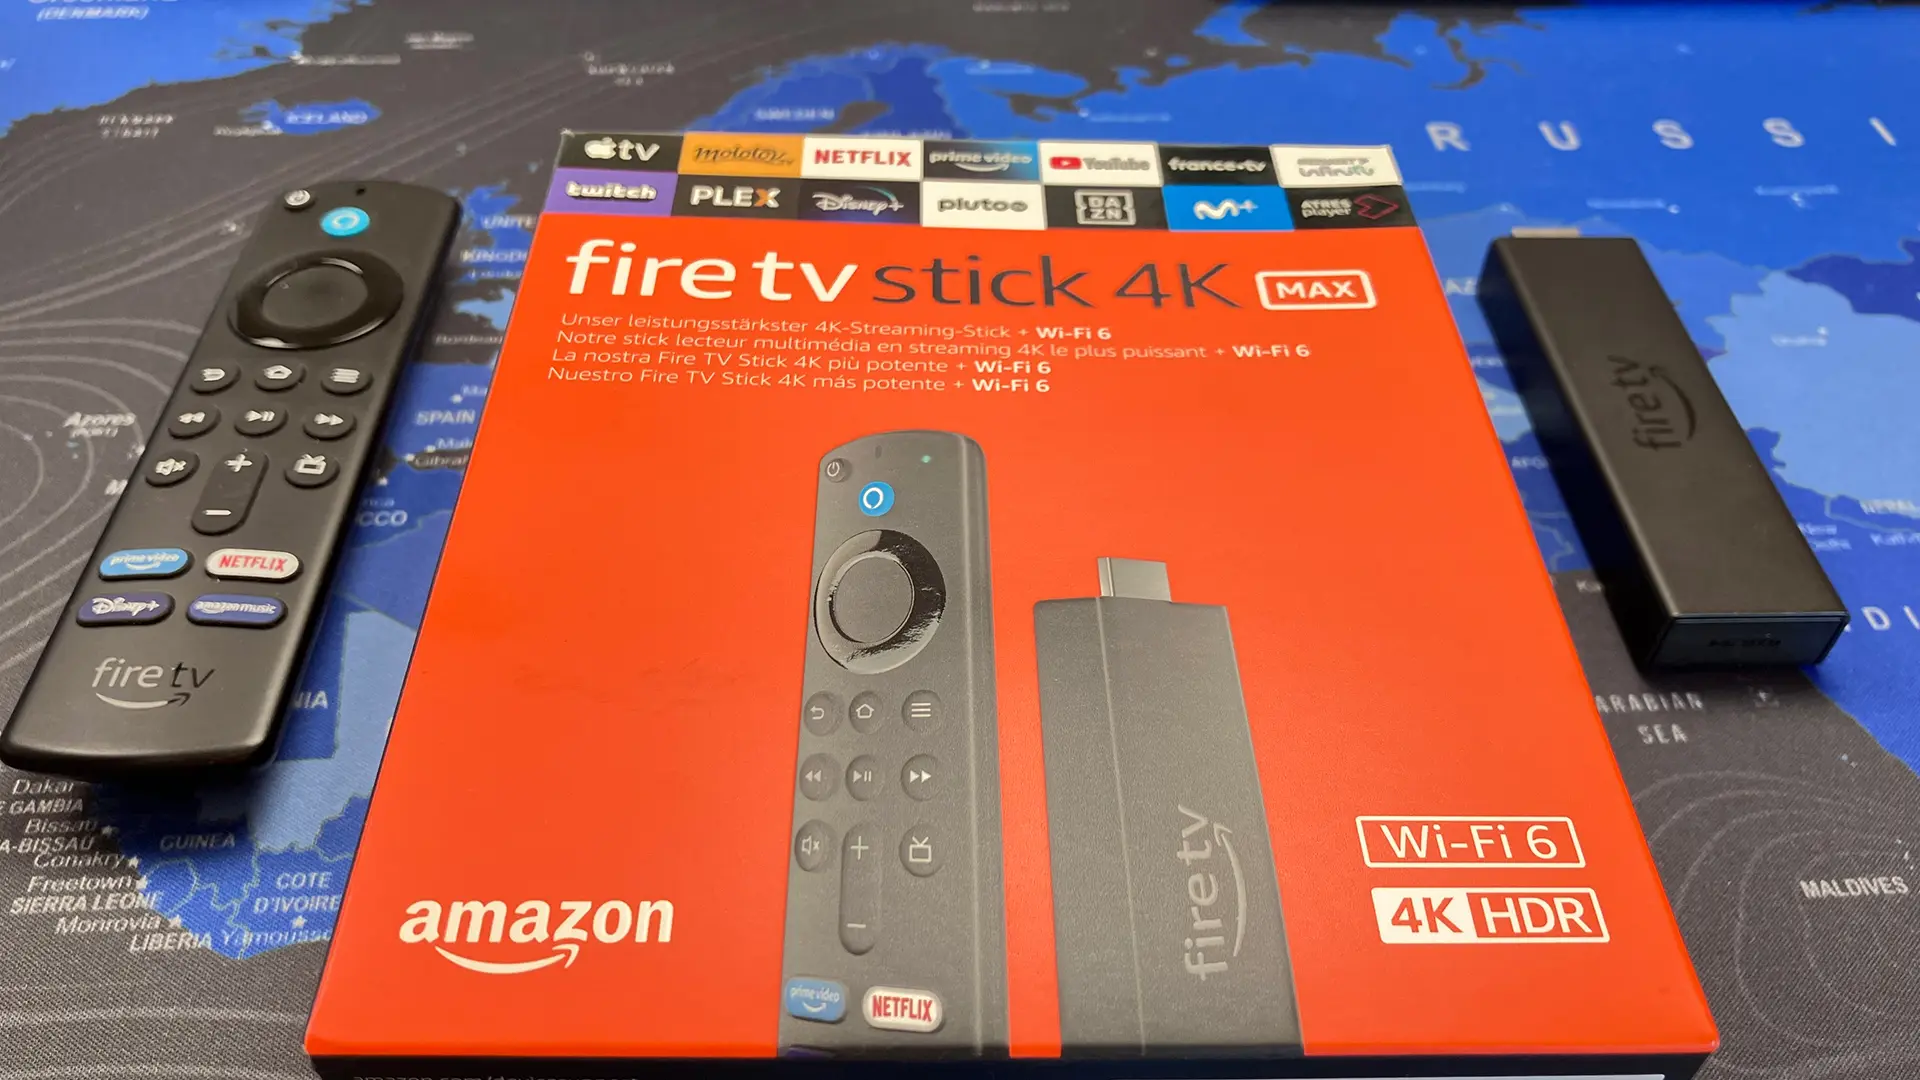 Accesorios y complementos para el Fire TV Stick 4K Max